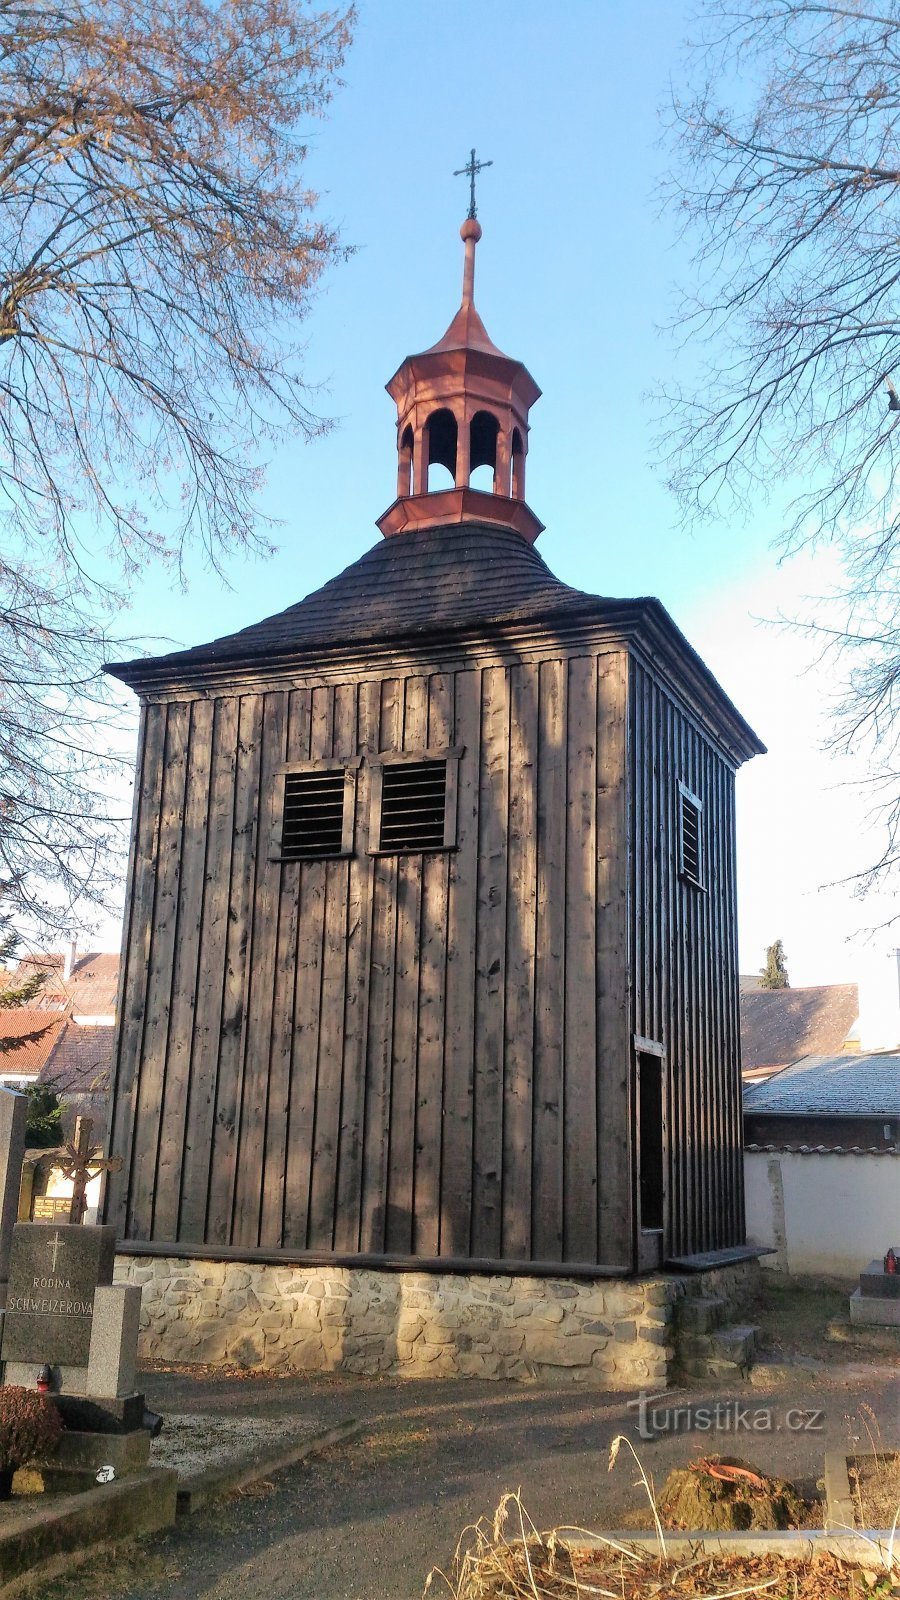 Hölzerner Glockenturm in Třebenice.